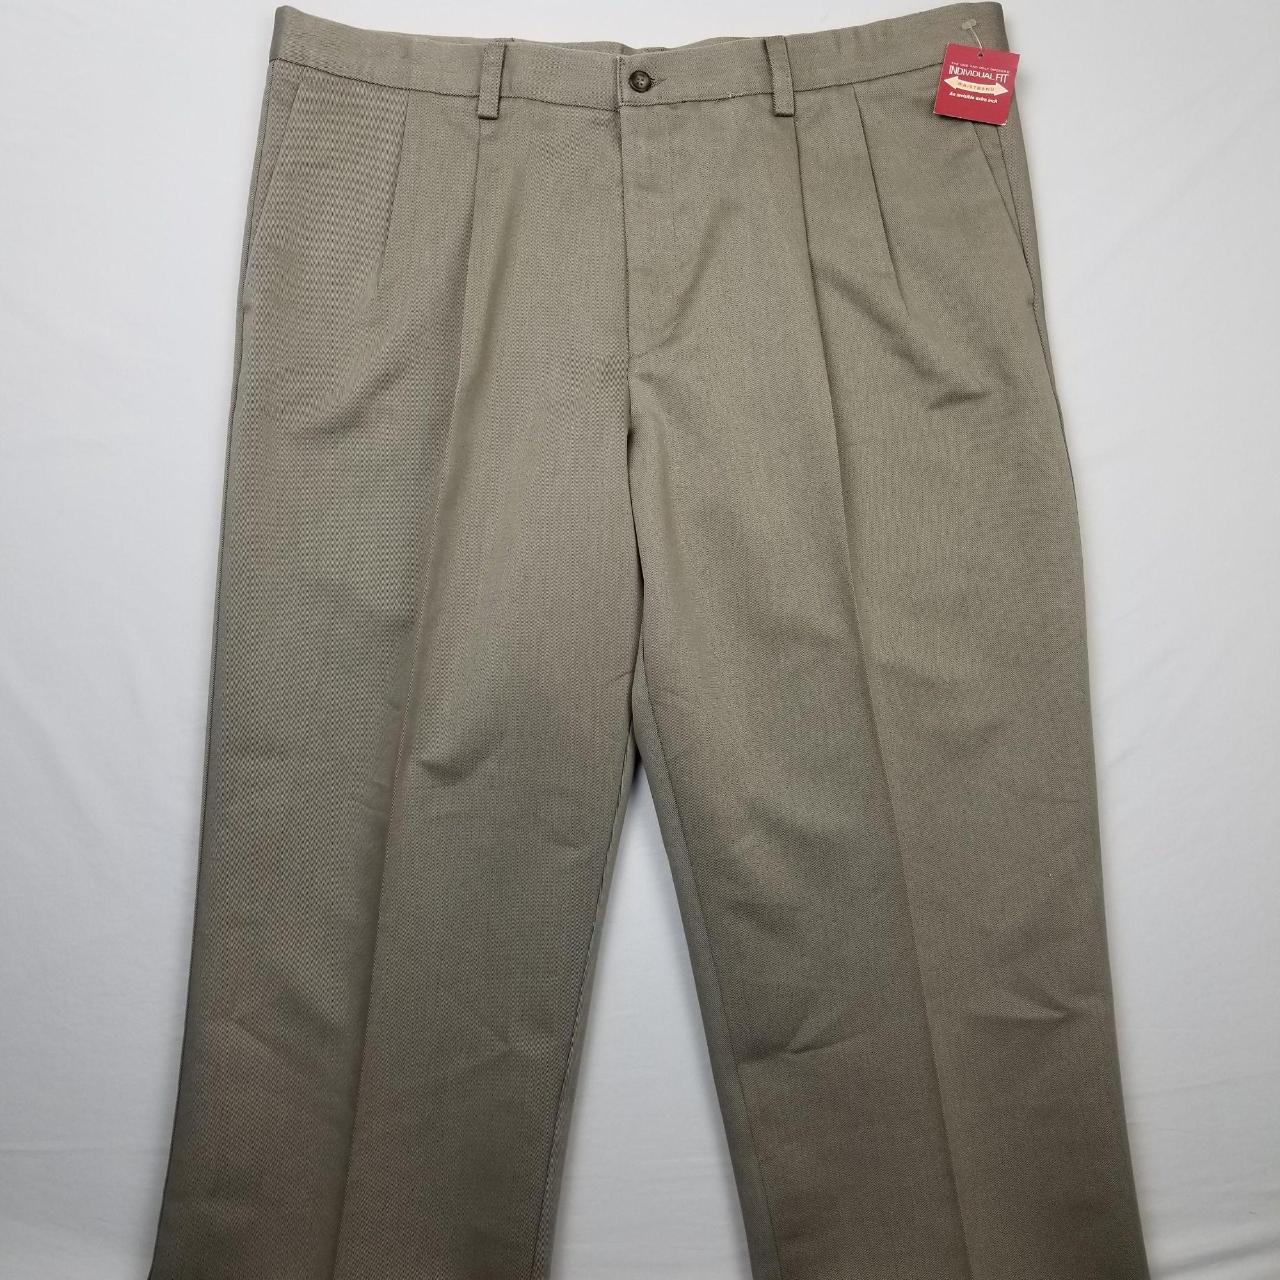 Dockers Premium Pants Relaxed Fit Trouser Men's Size... - Depop